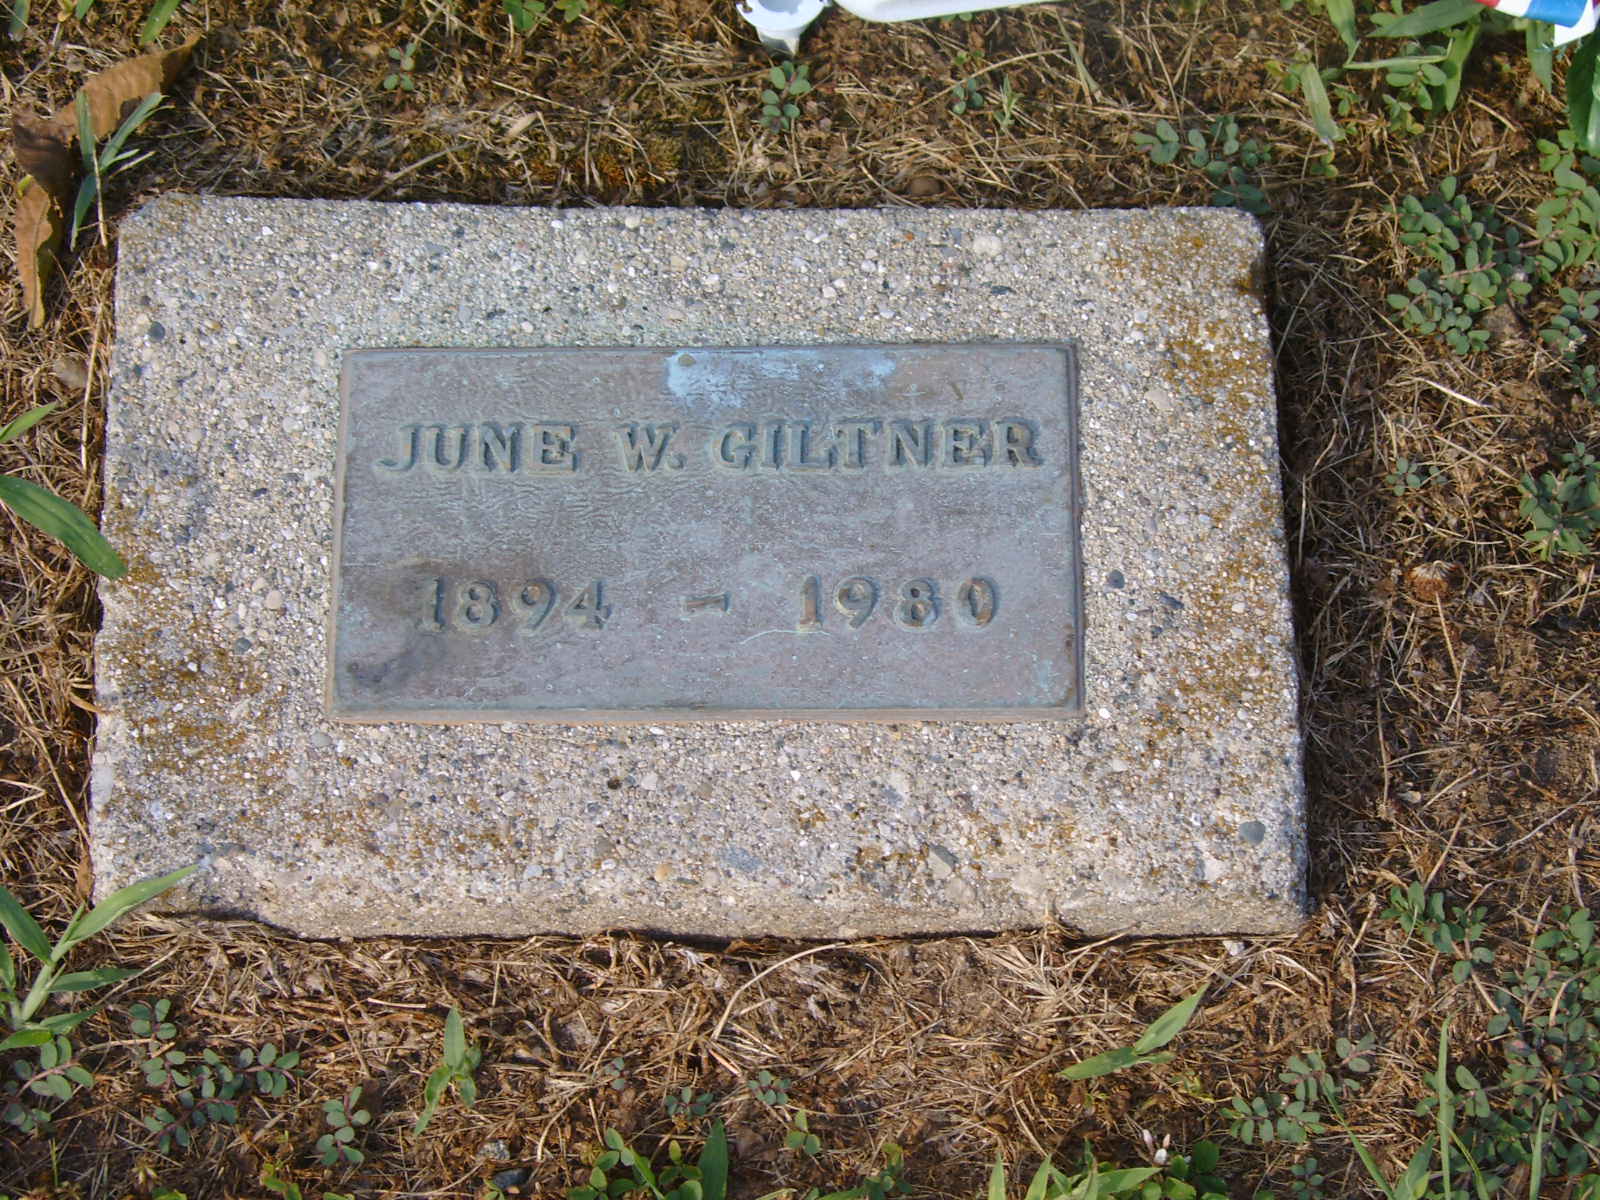 June Giltner